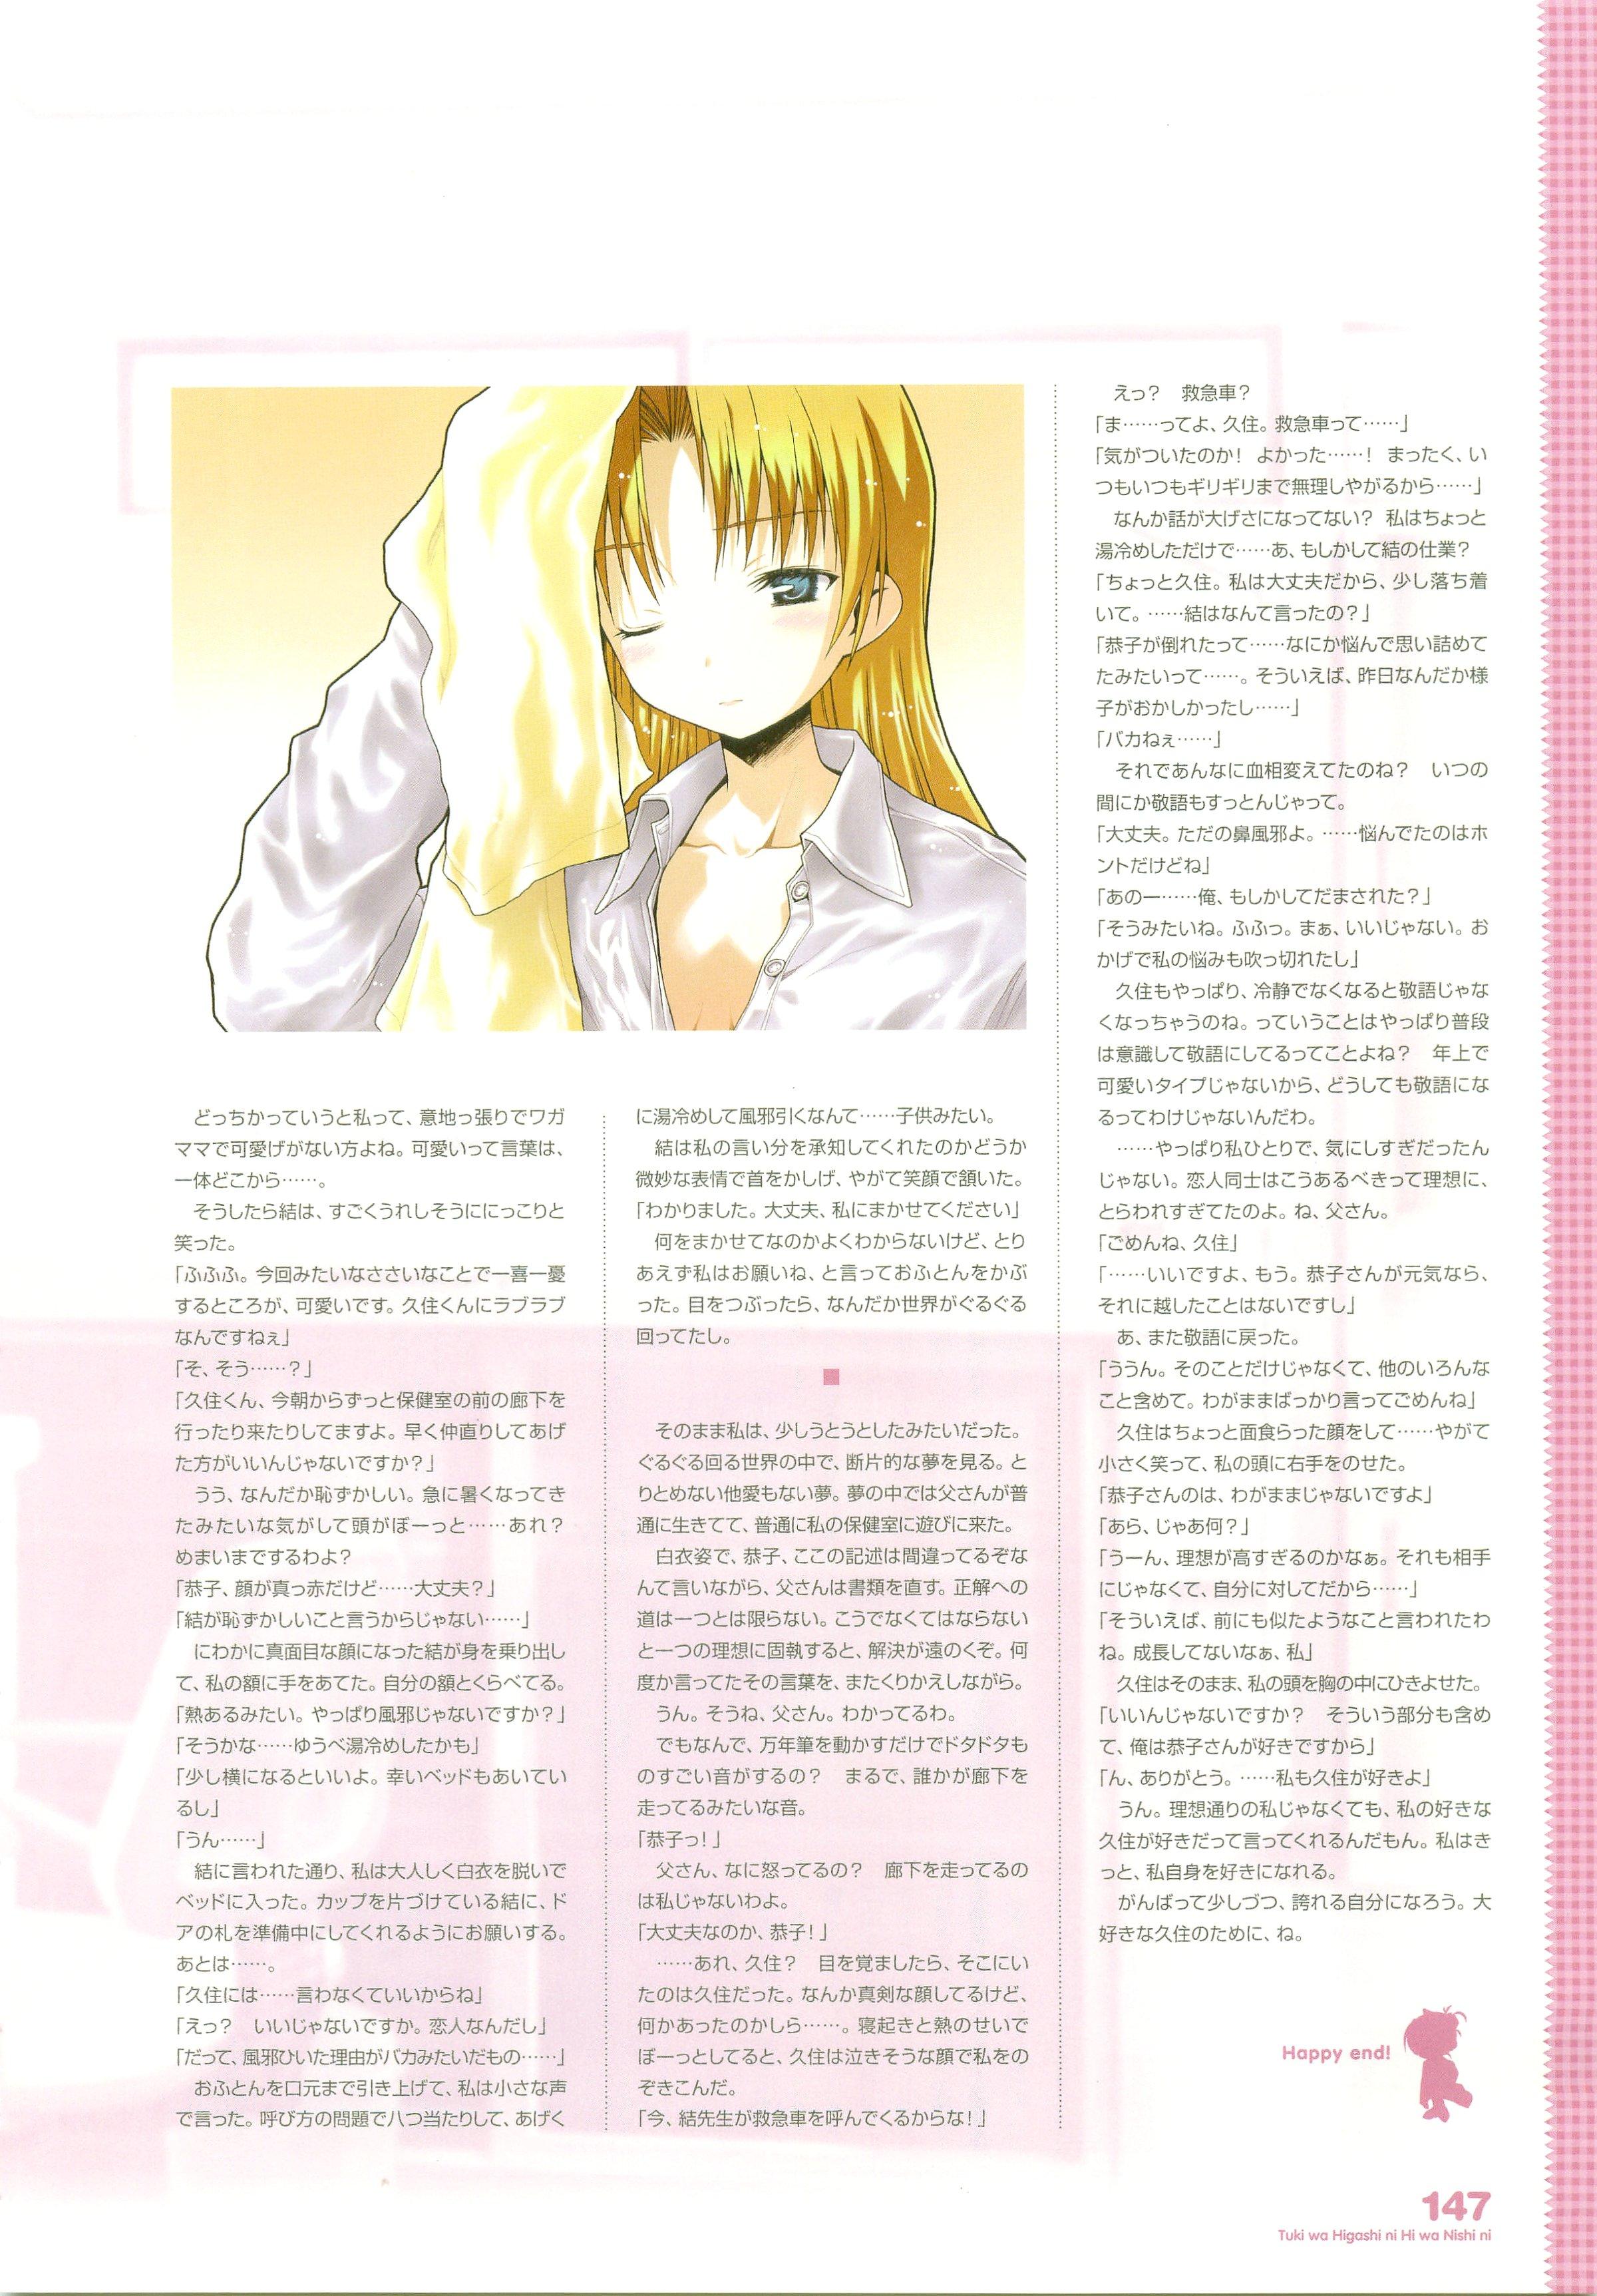 Tsuki wa Higashi ni Hi wa Nishi ni ～ Operation Sanctuary ～ Visual Fan Book 181